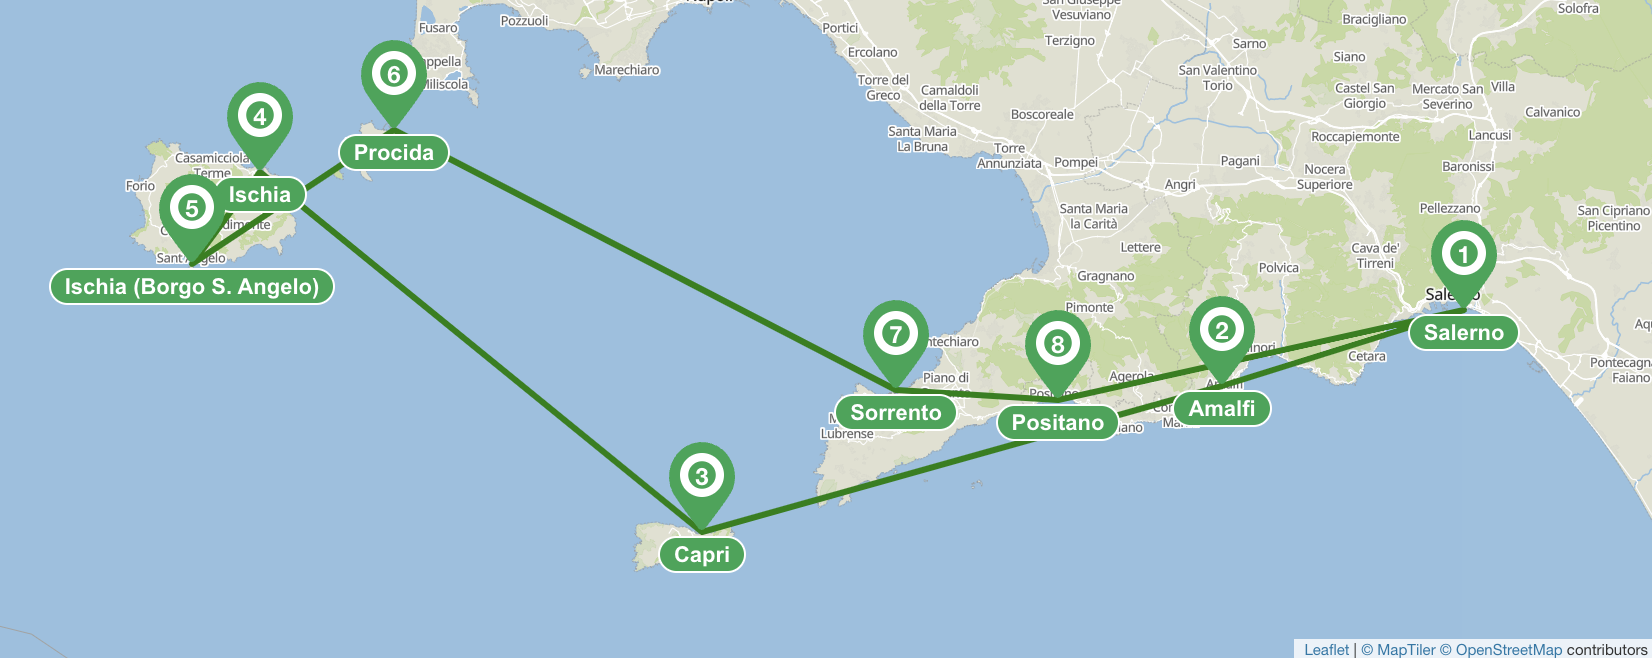 Amalfi coast 7 day sailing itinerary